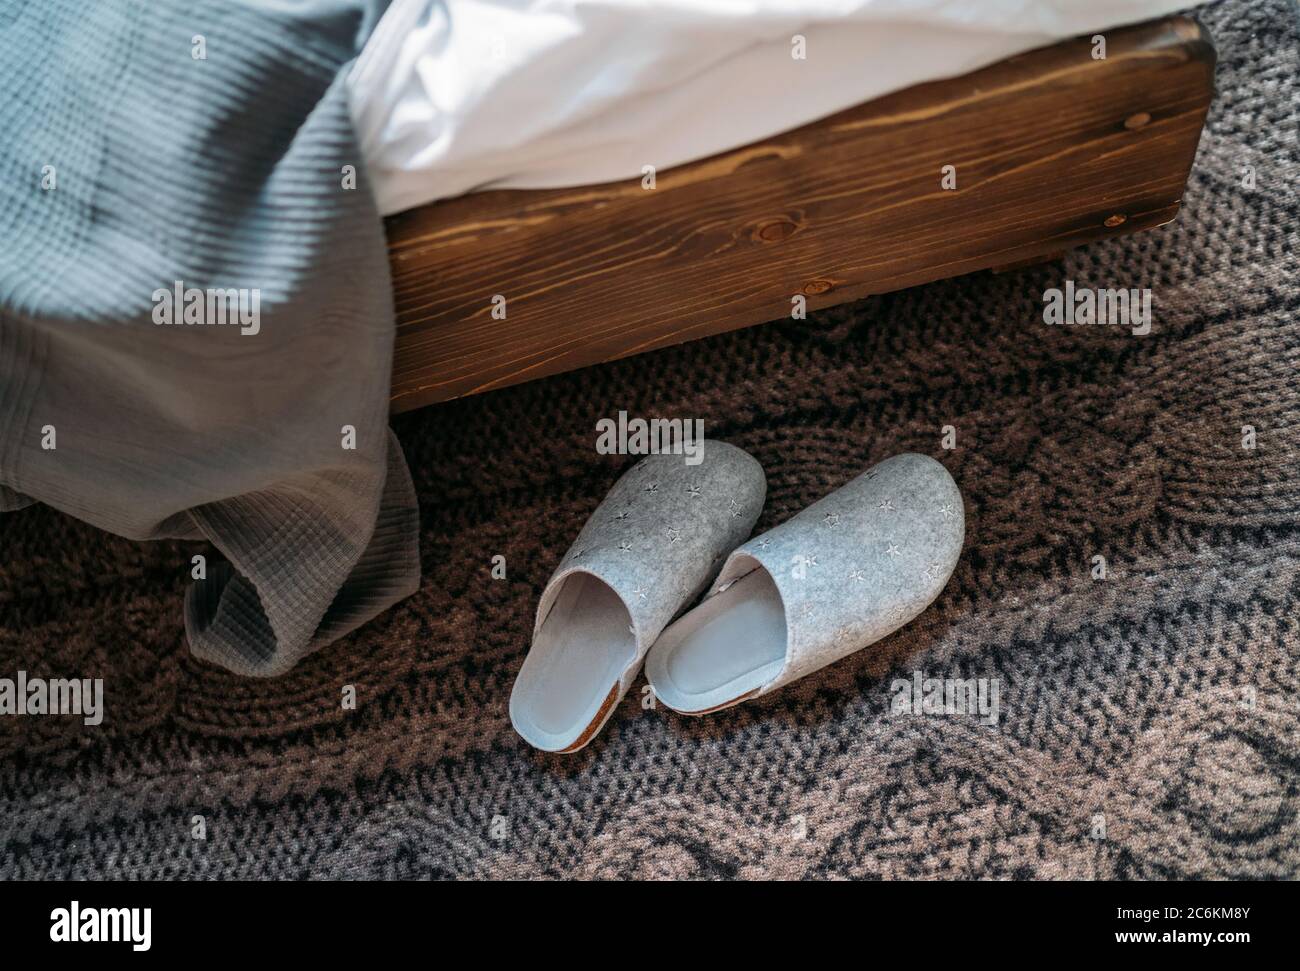 Das Paar graue Hausschuhen in der Nähe des Holzbettes auf dem "Strickboden" im gemütlichen Schlafzimmer. Home Sweet Home Konzept Bild. Stockfoto